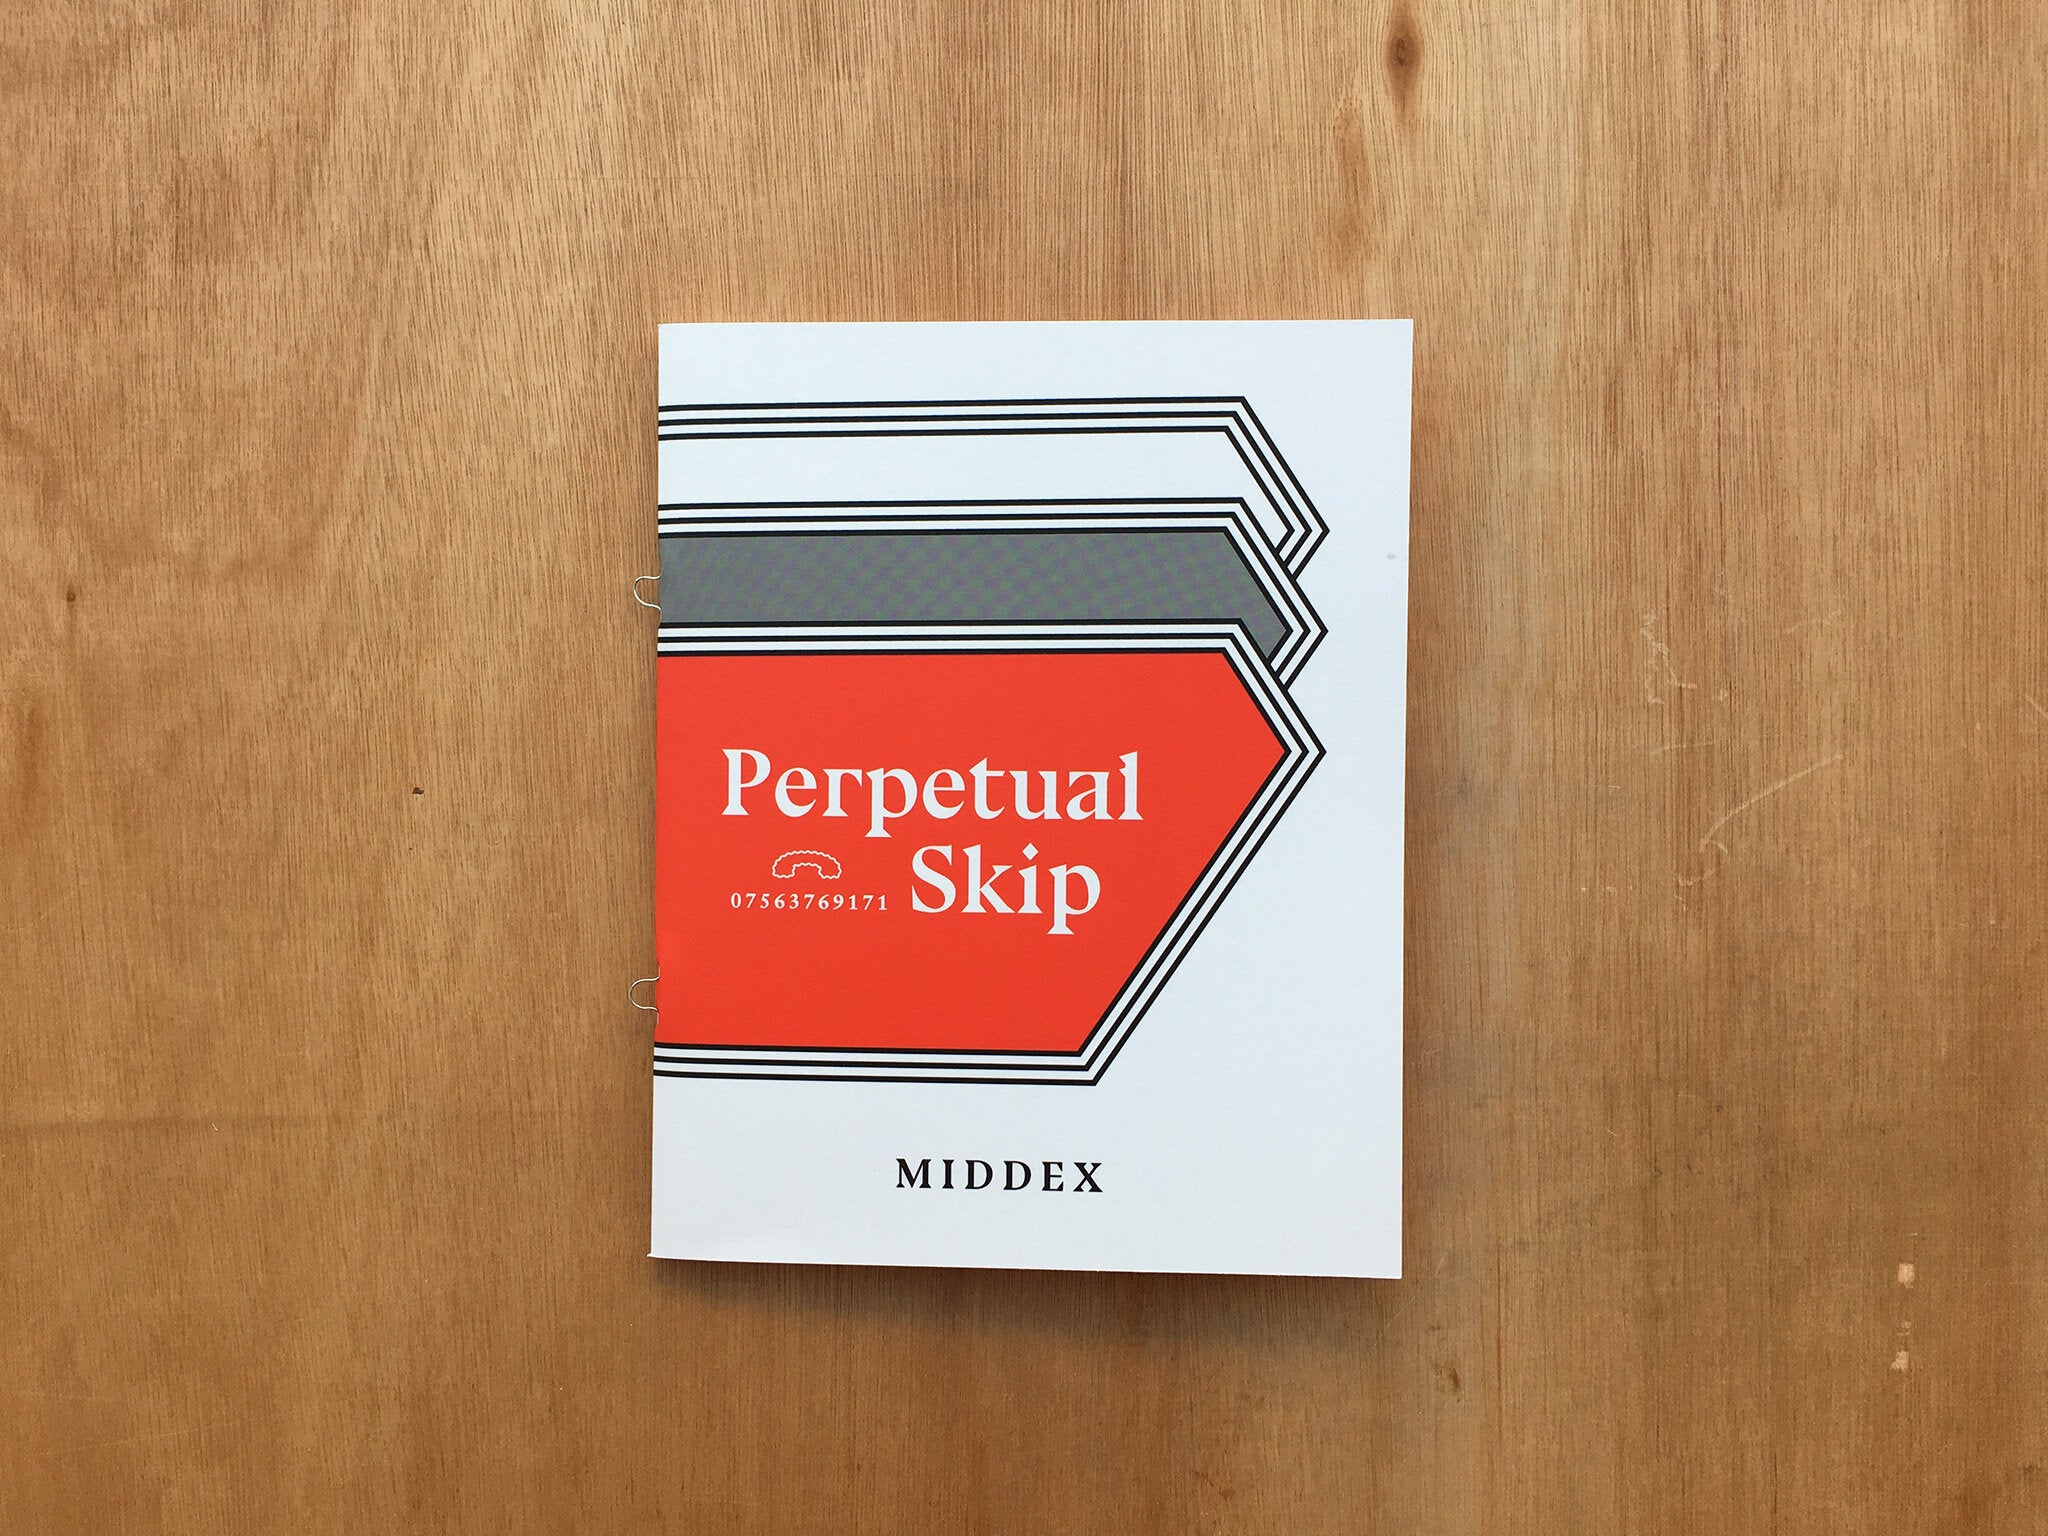 PERPETUAL SKIP by Middex